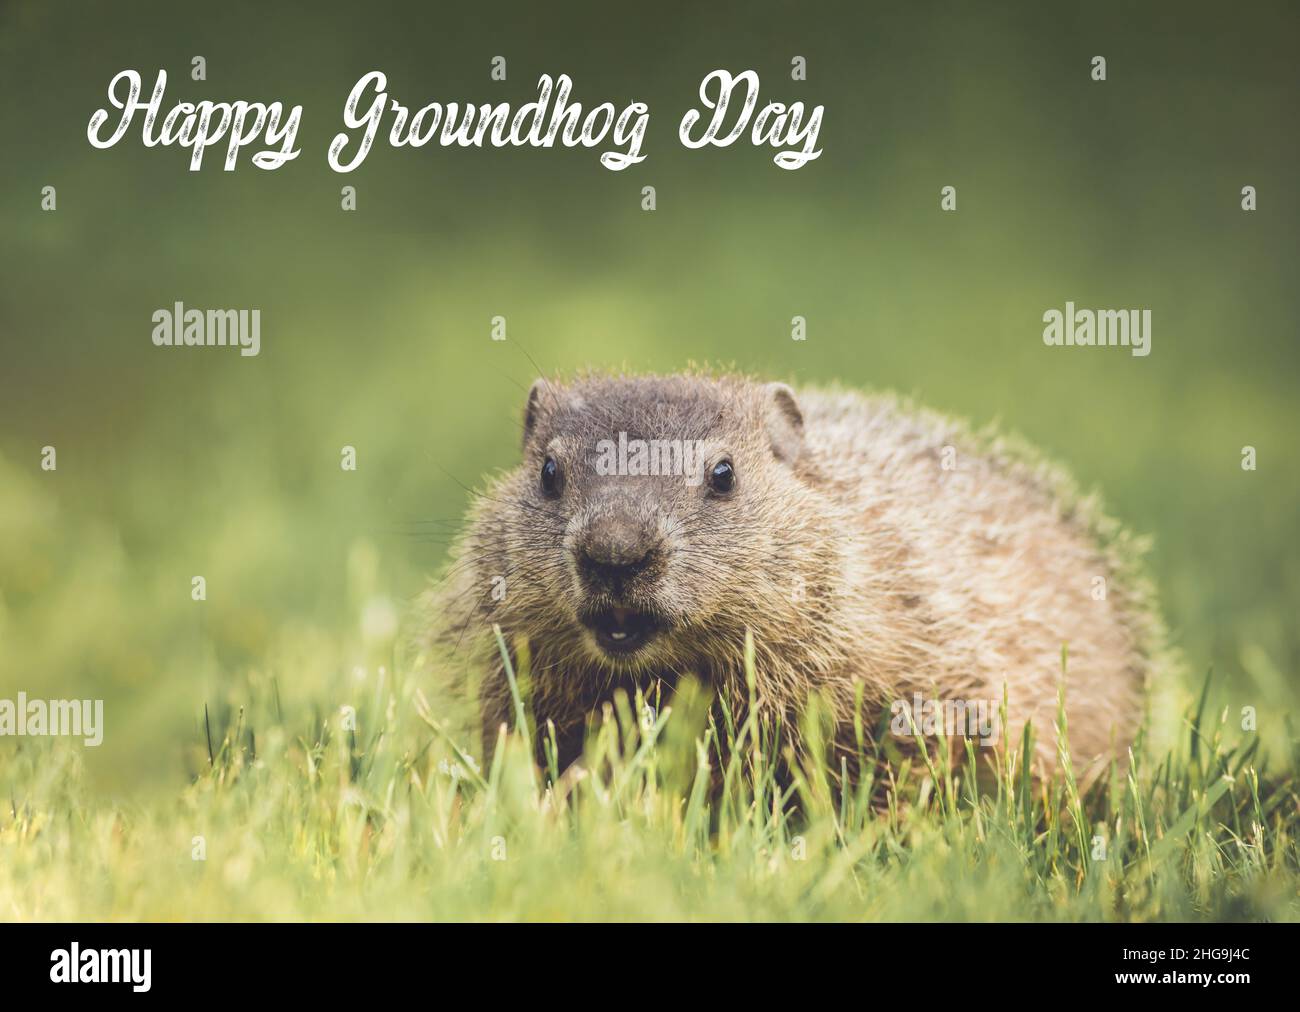 Testo scritto del giorno felice di Groundhog con il giovane Groundhog (Monax Marmota) in erba su sfondo verde morbido Foto Stock